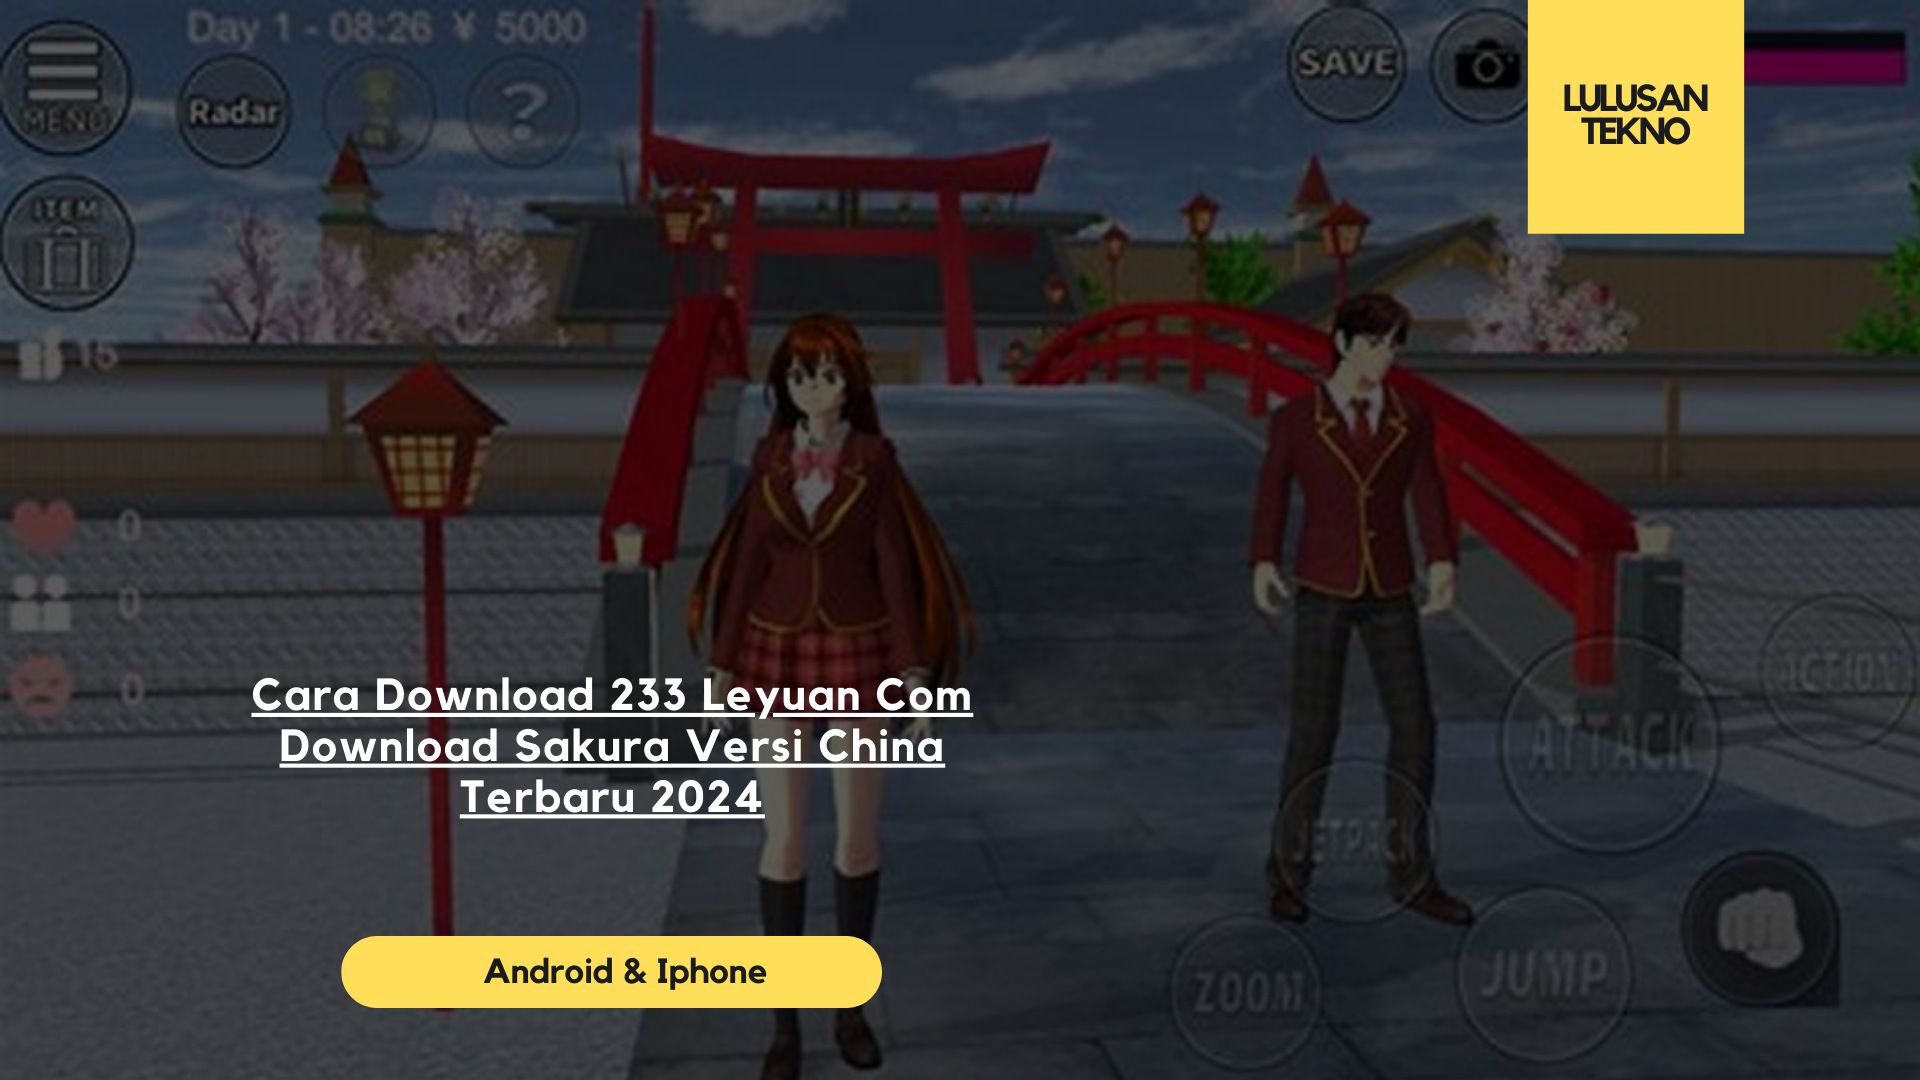 Cara Download 233 Leyuan Com Download Sakura Versi China Terbaru 2024